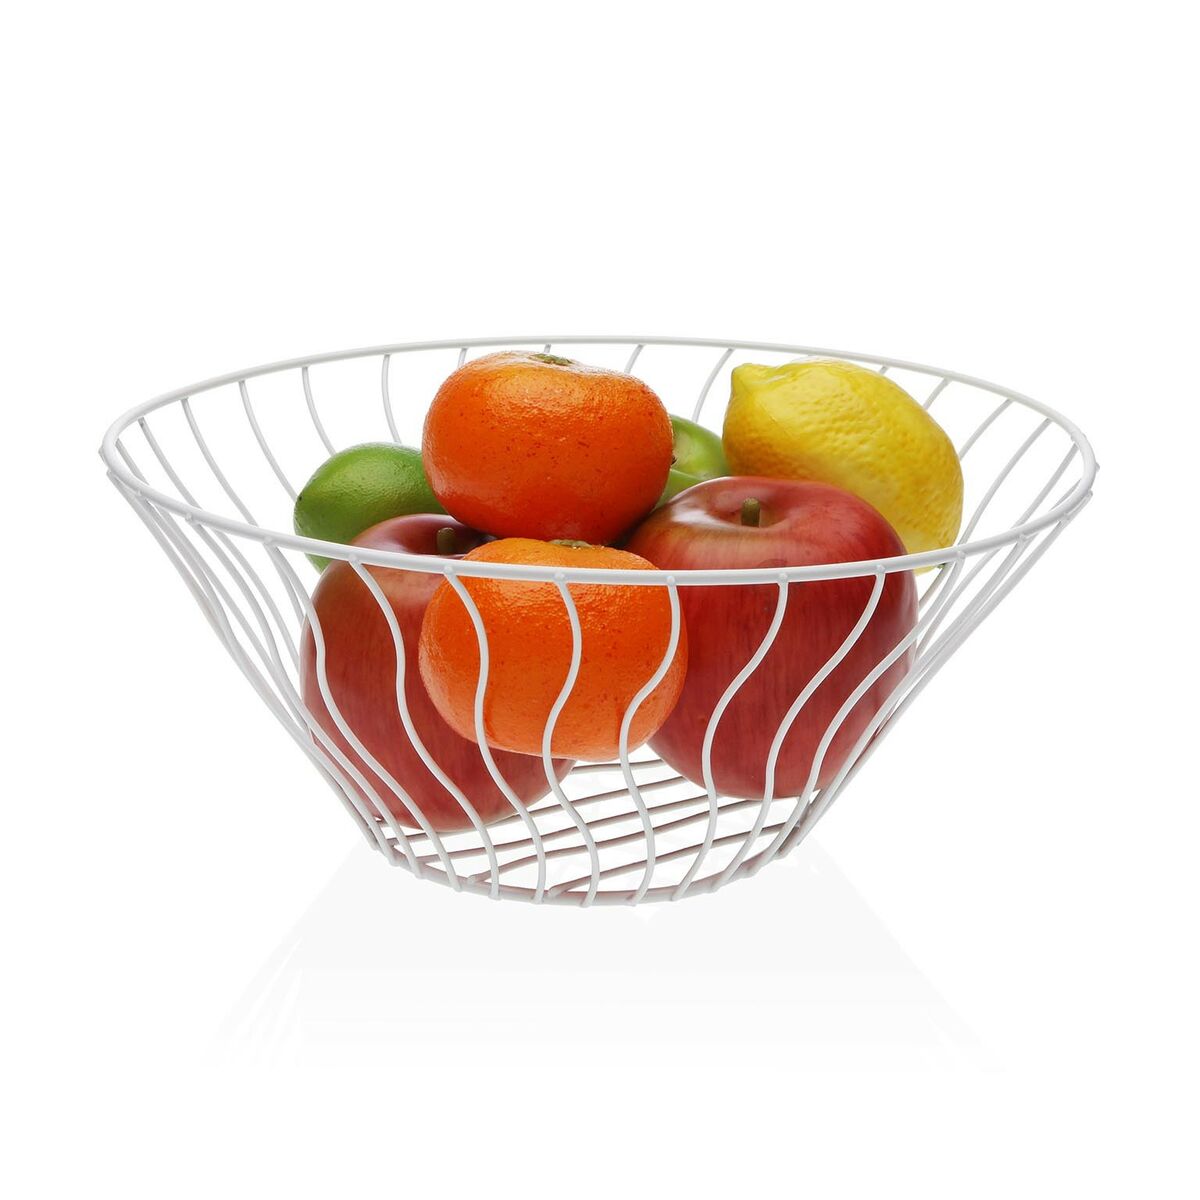 Fruit bowl white metal